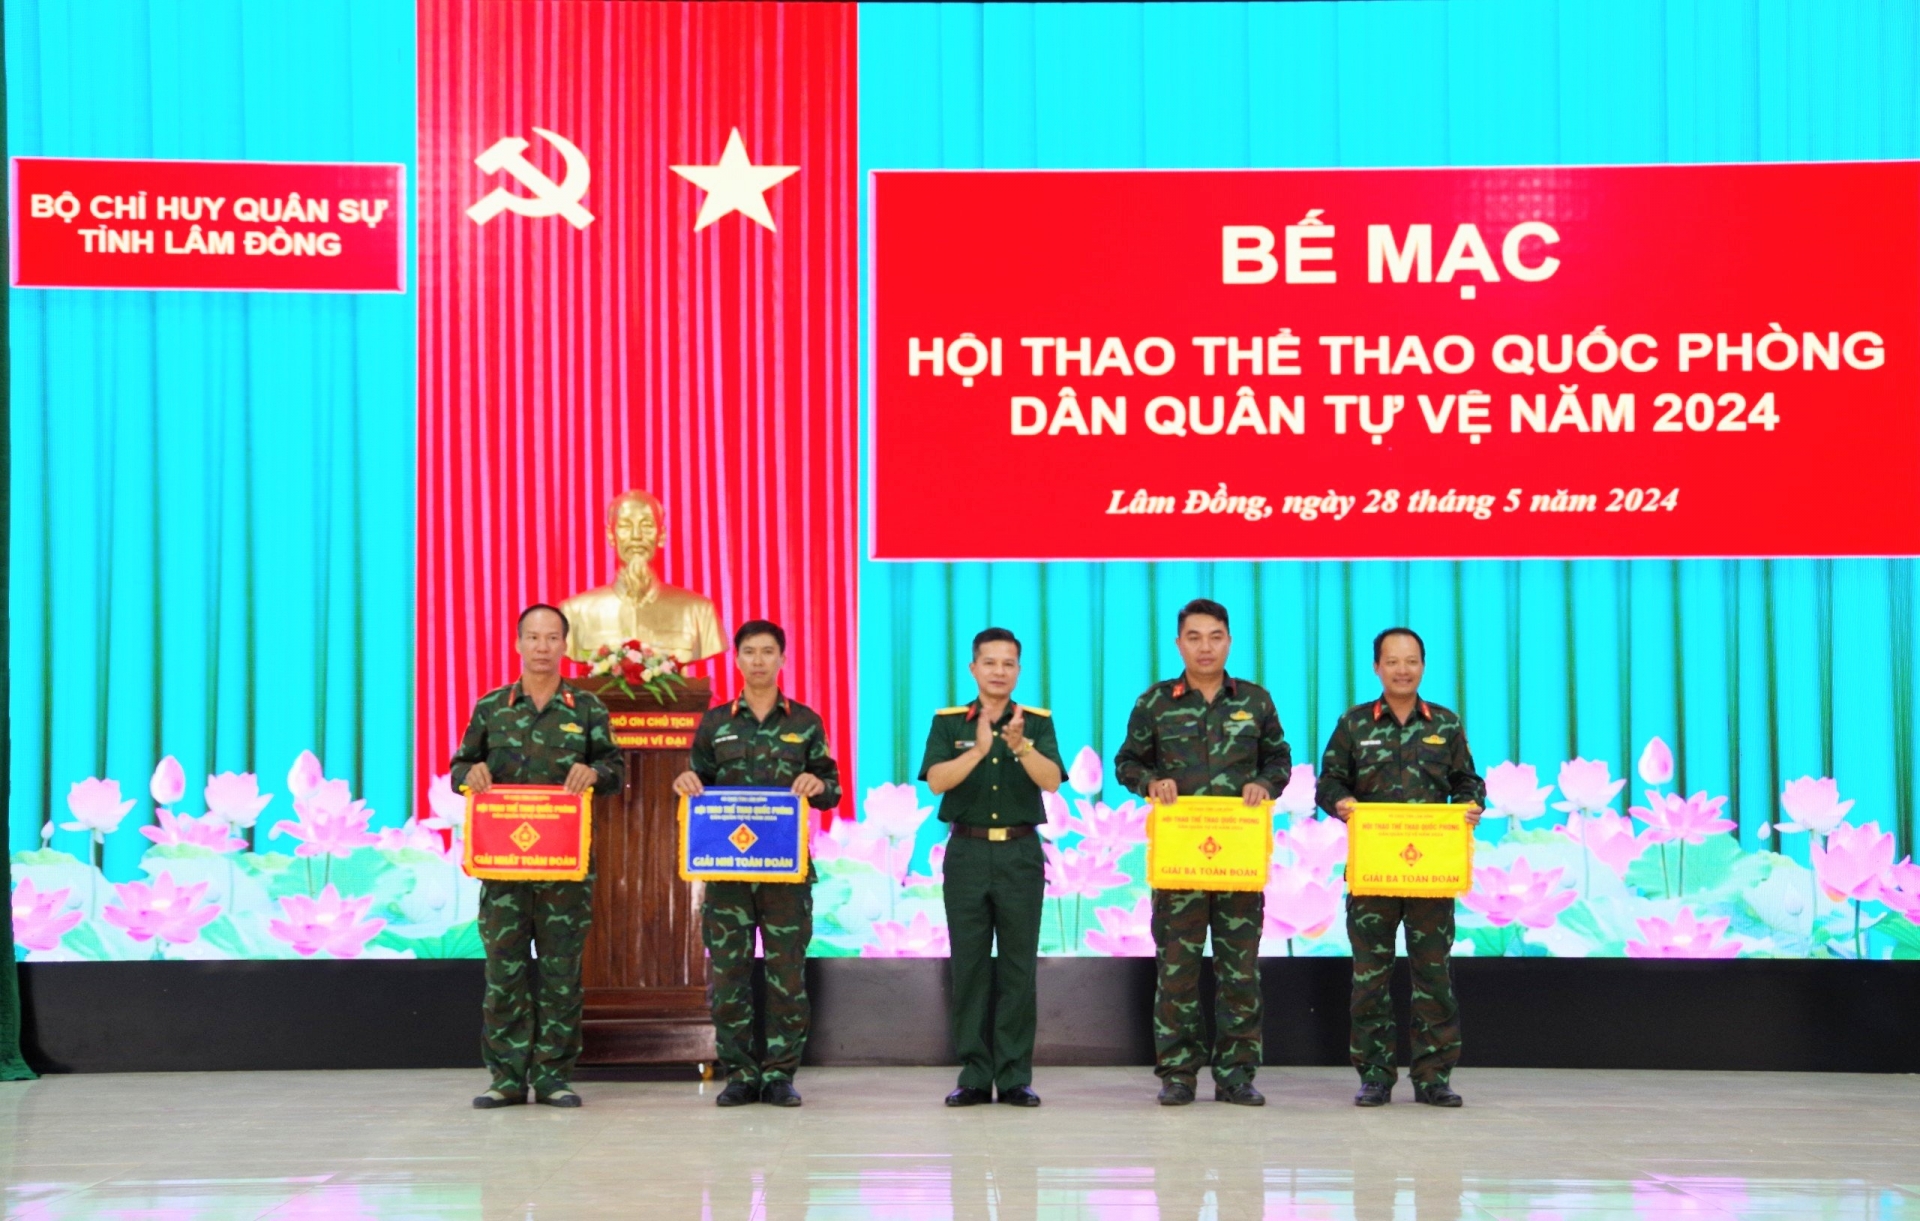 Ban CHQS huyện Lâm Hà nhất toàn đoàn Hội thao thể thao quốc phòng Dân quân tự vệ tỉnh